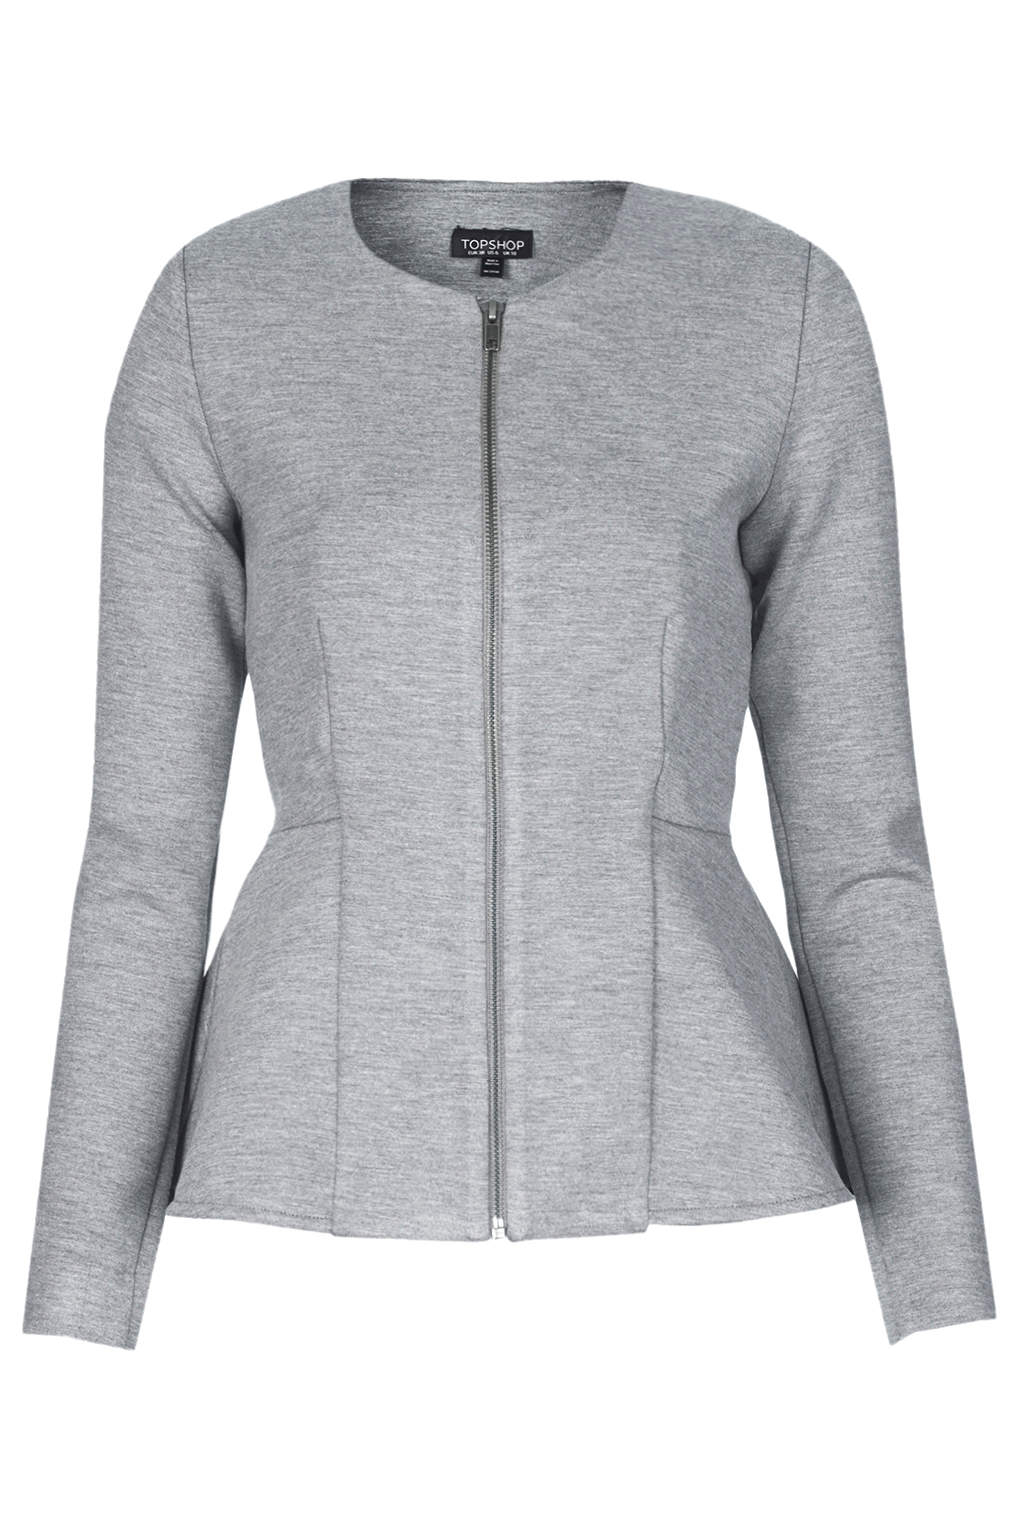 Topshop Slim Peplum Zip Jacket in Gray (GREY) | Lyst